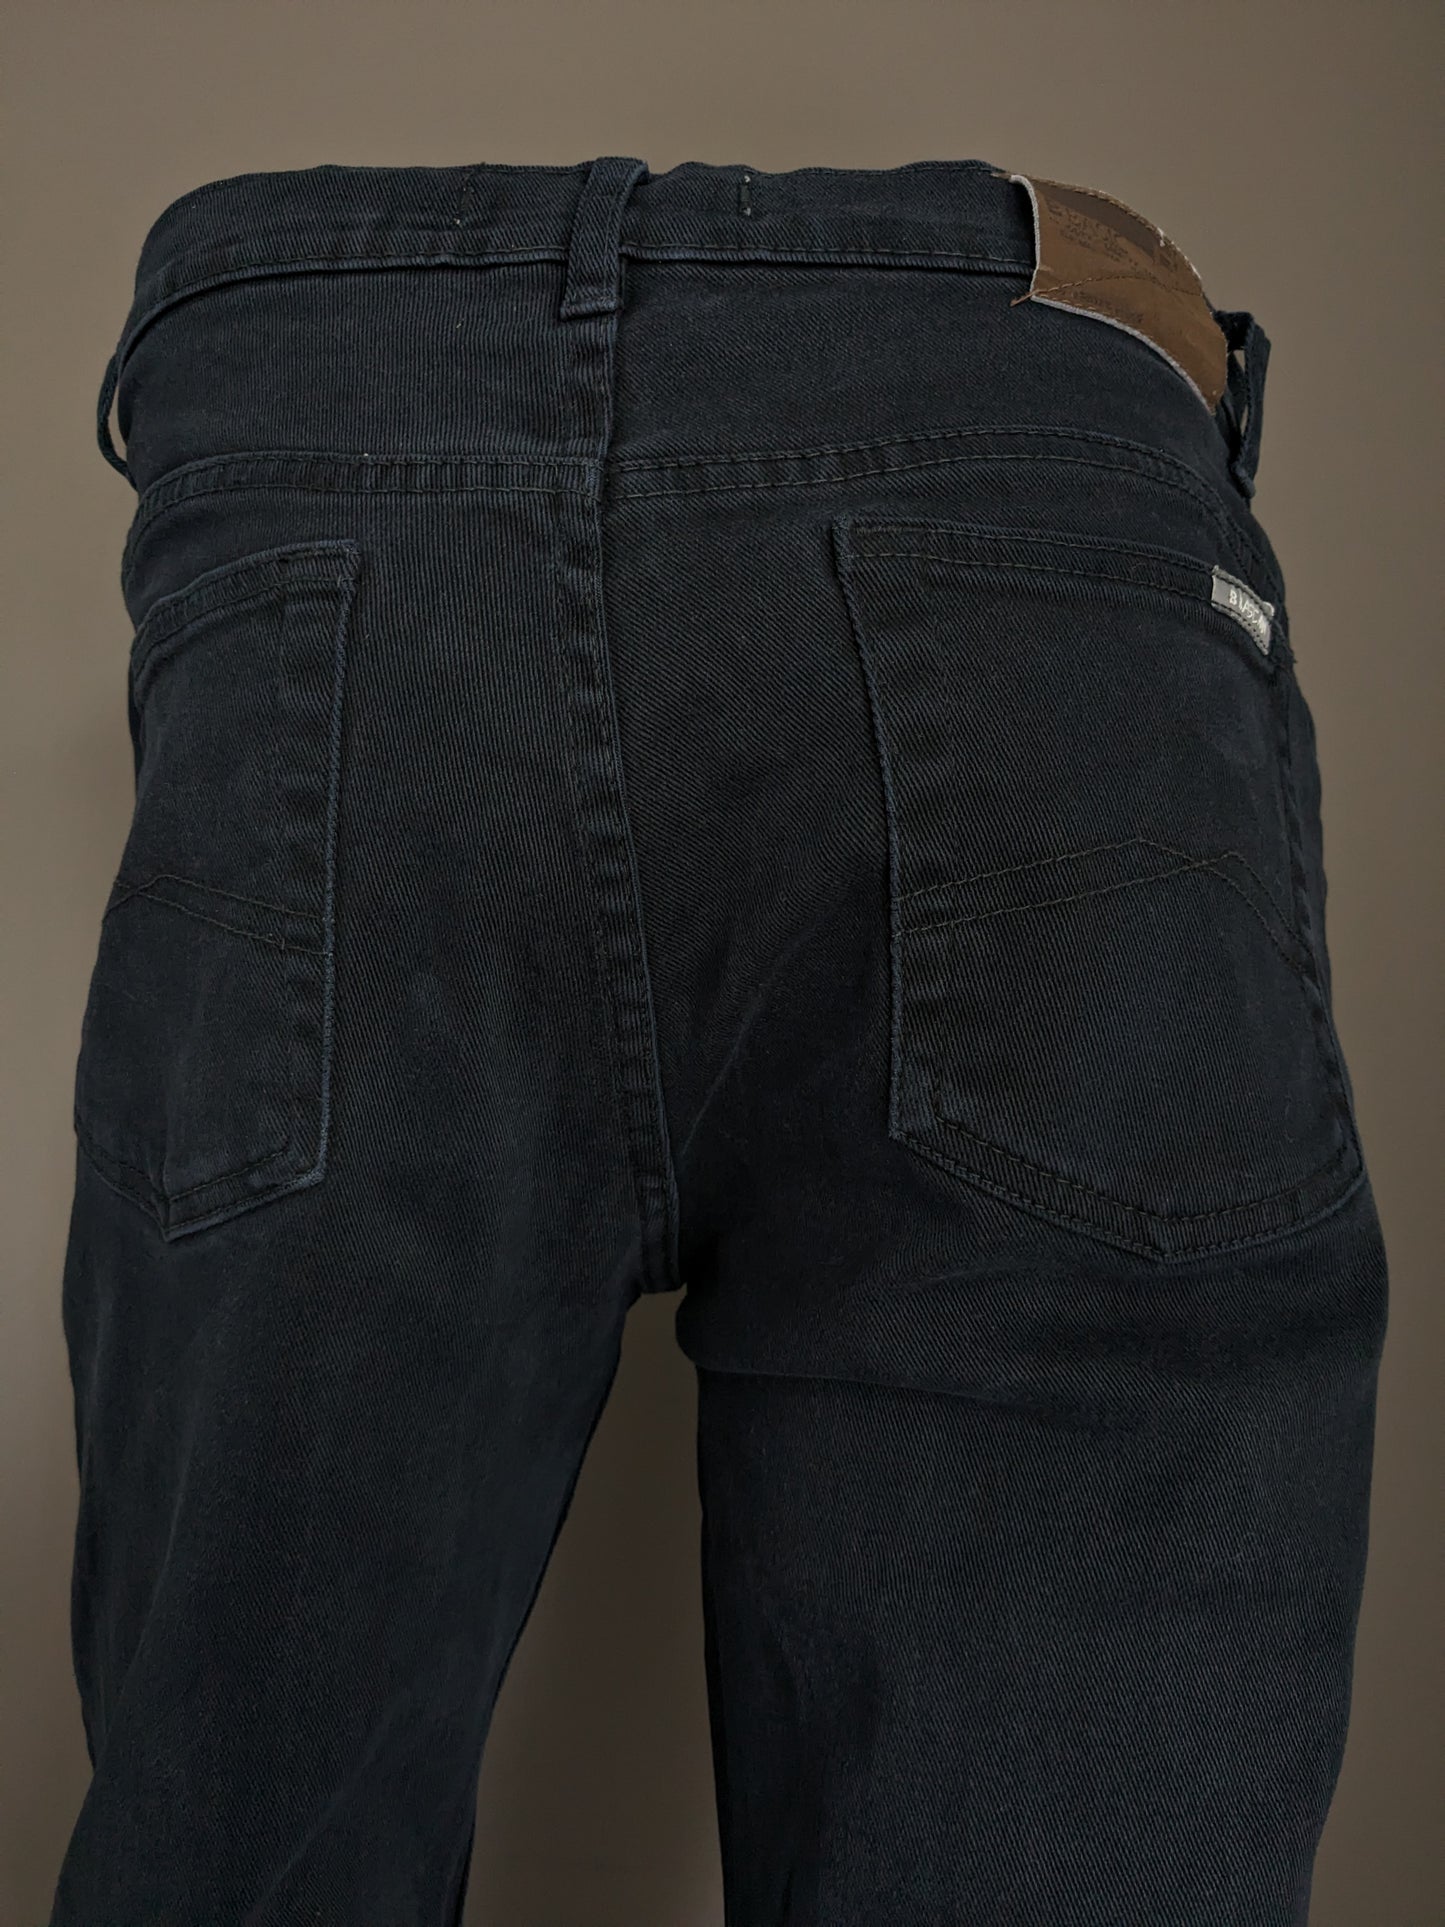 B Basique par Brams Paris Jeans. Couleur noire. Taille W34 - L34. Fit de confort. extensible.